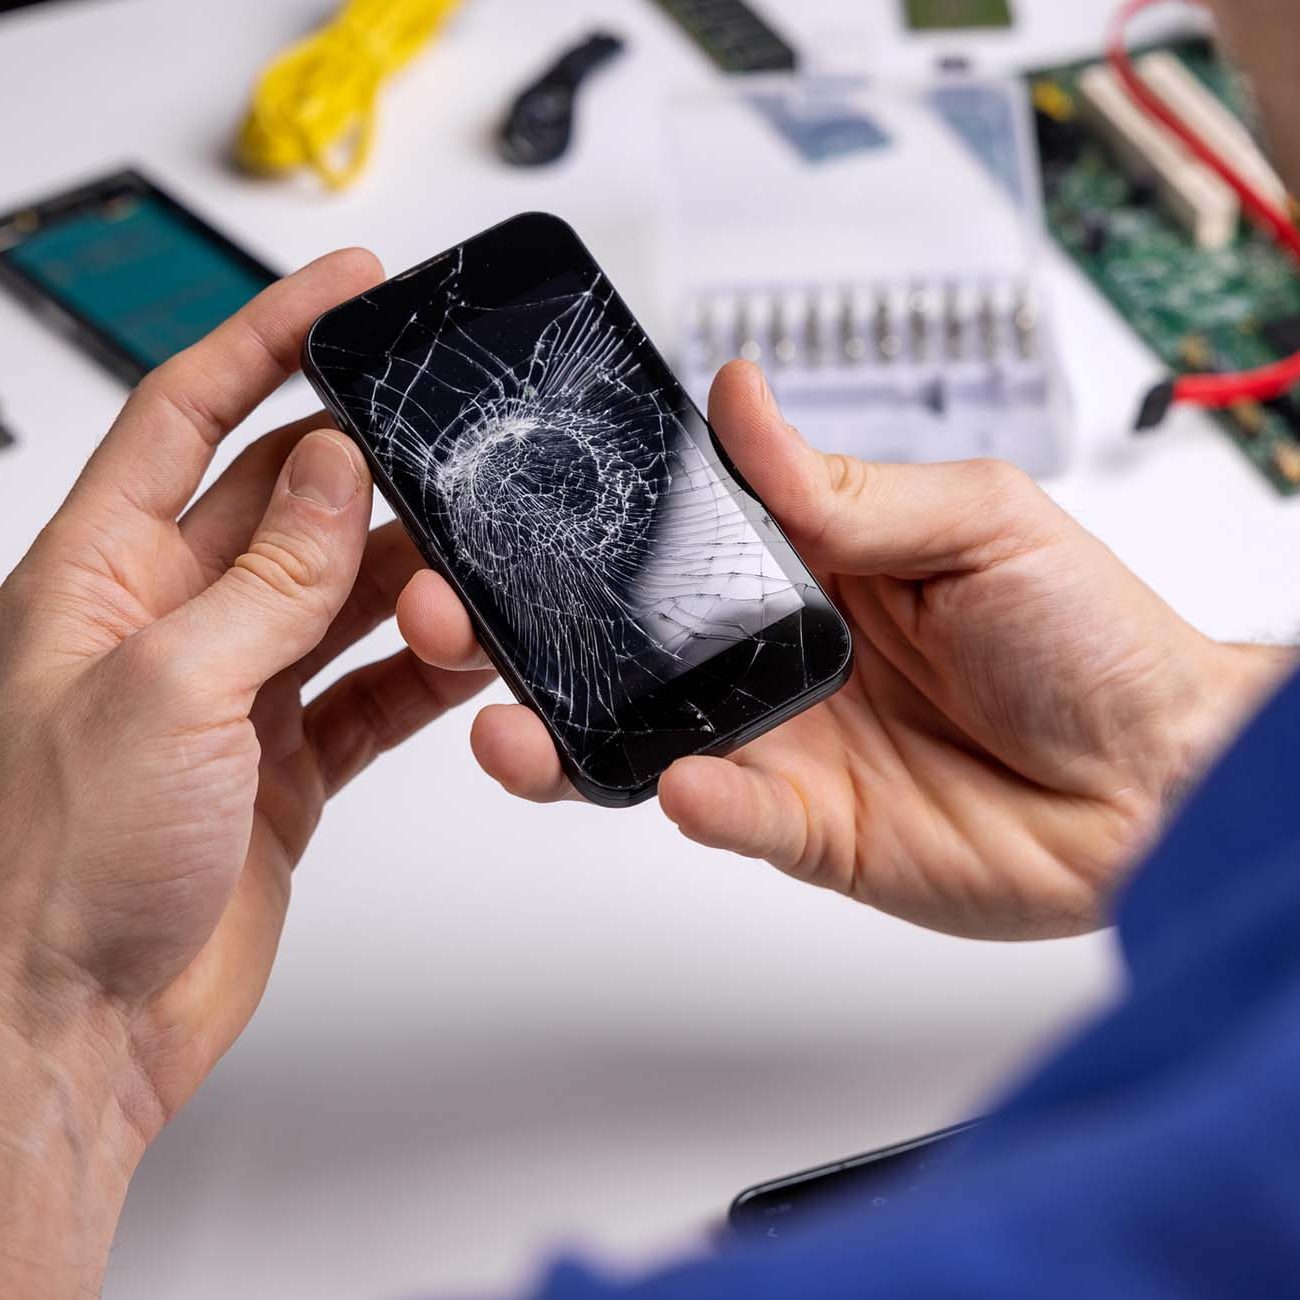 Smartphone with broken cracked screen in technician hands. phone repair service concept